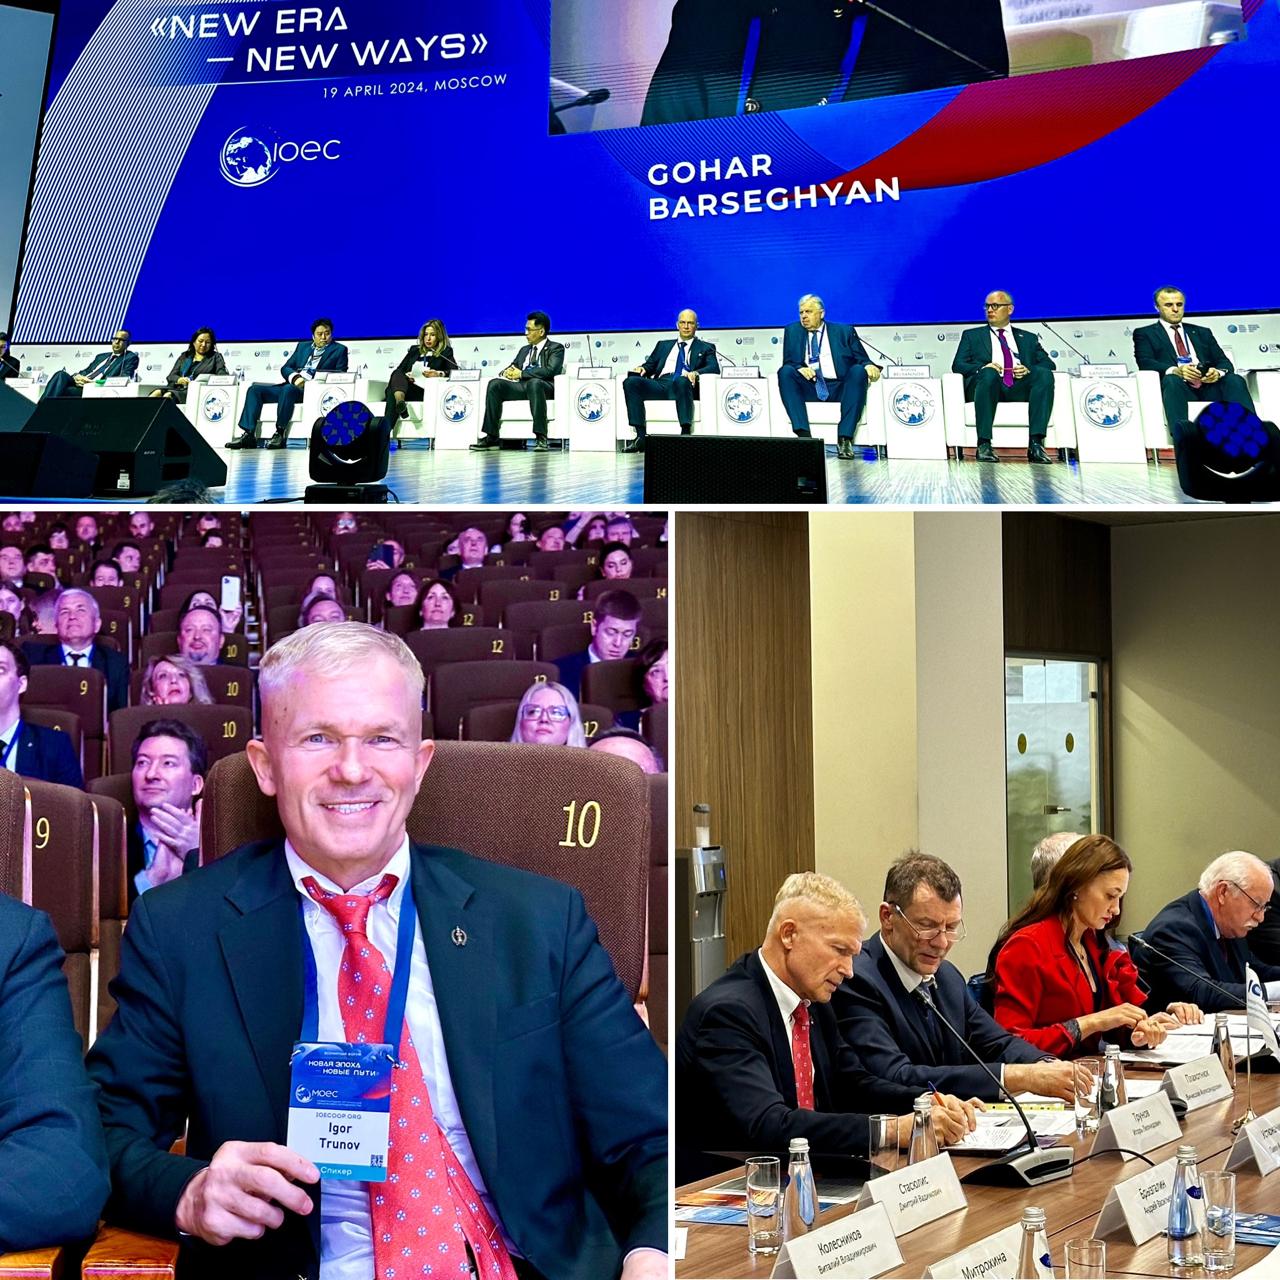 Международная Организация Евразийского Сотрудничества при поддержке МКПП проводит Всемирный форум «Новая эпоха – новые пути»